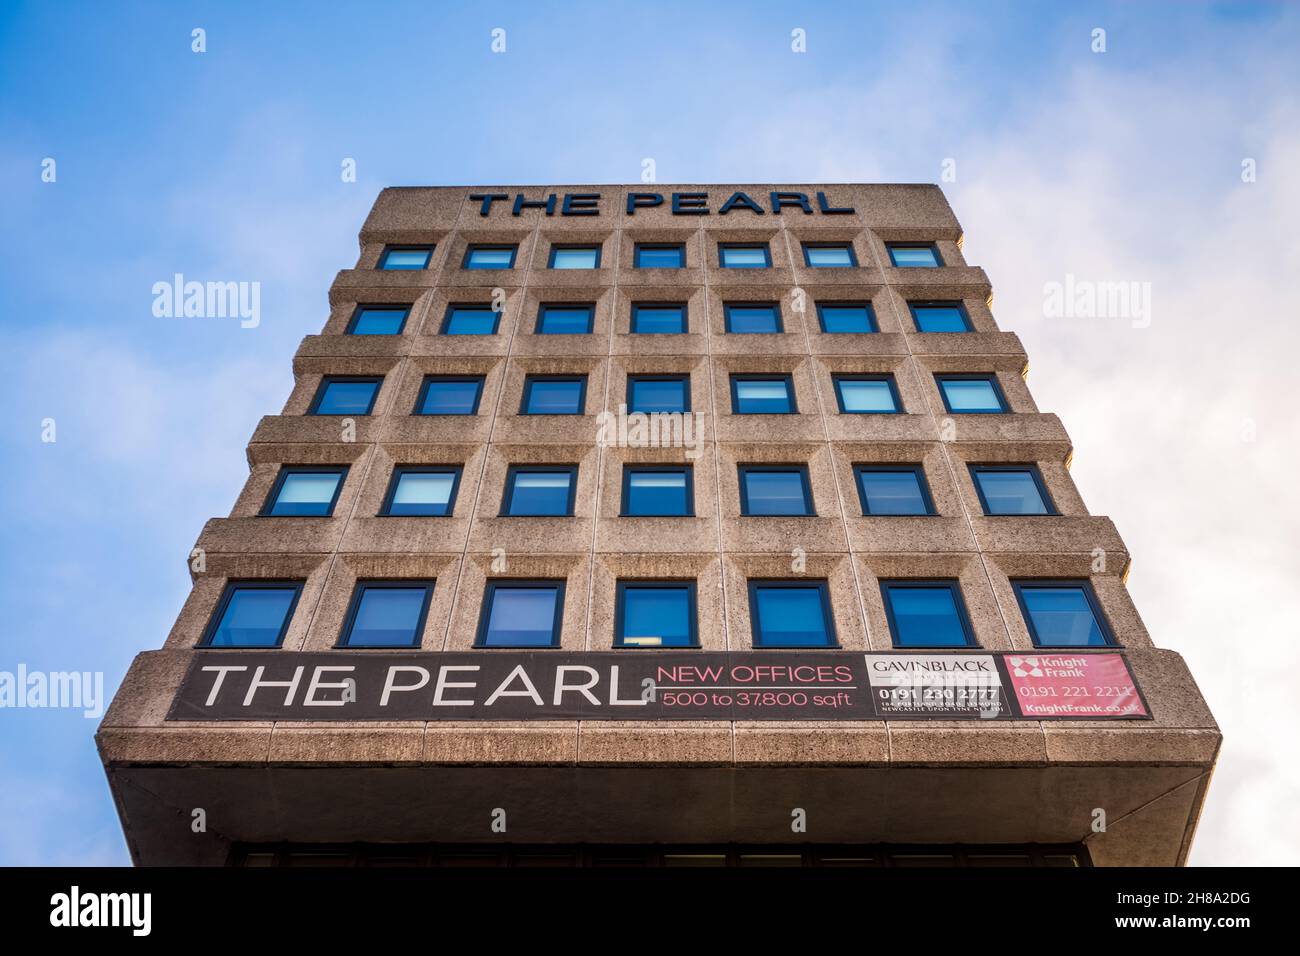 The Pearl Newcastle - renovierte Büros im Stadtzentrum von Newcastle, ehemals Pearl Assurance Building. Bürogebäude im Stil des Brutalismus. Stockfoto